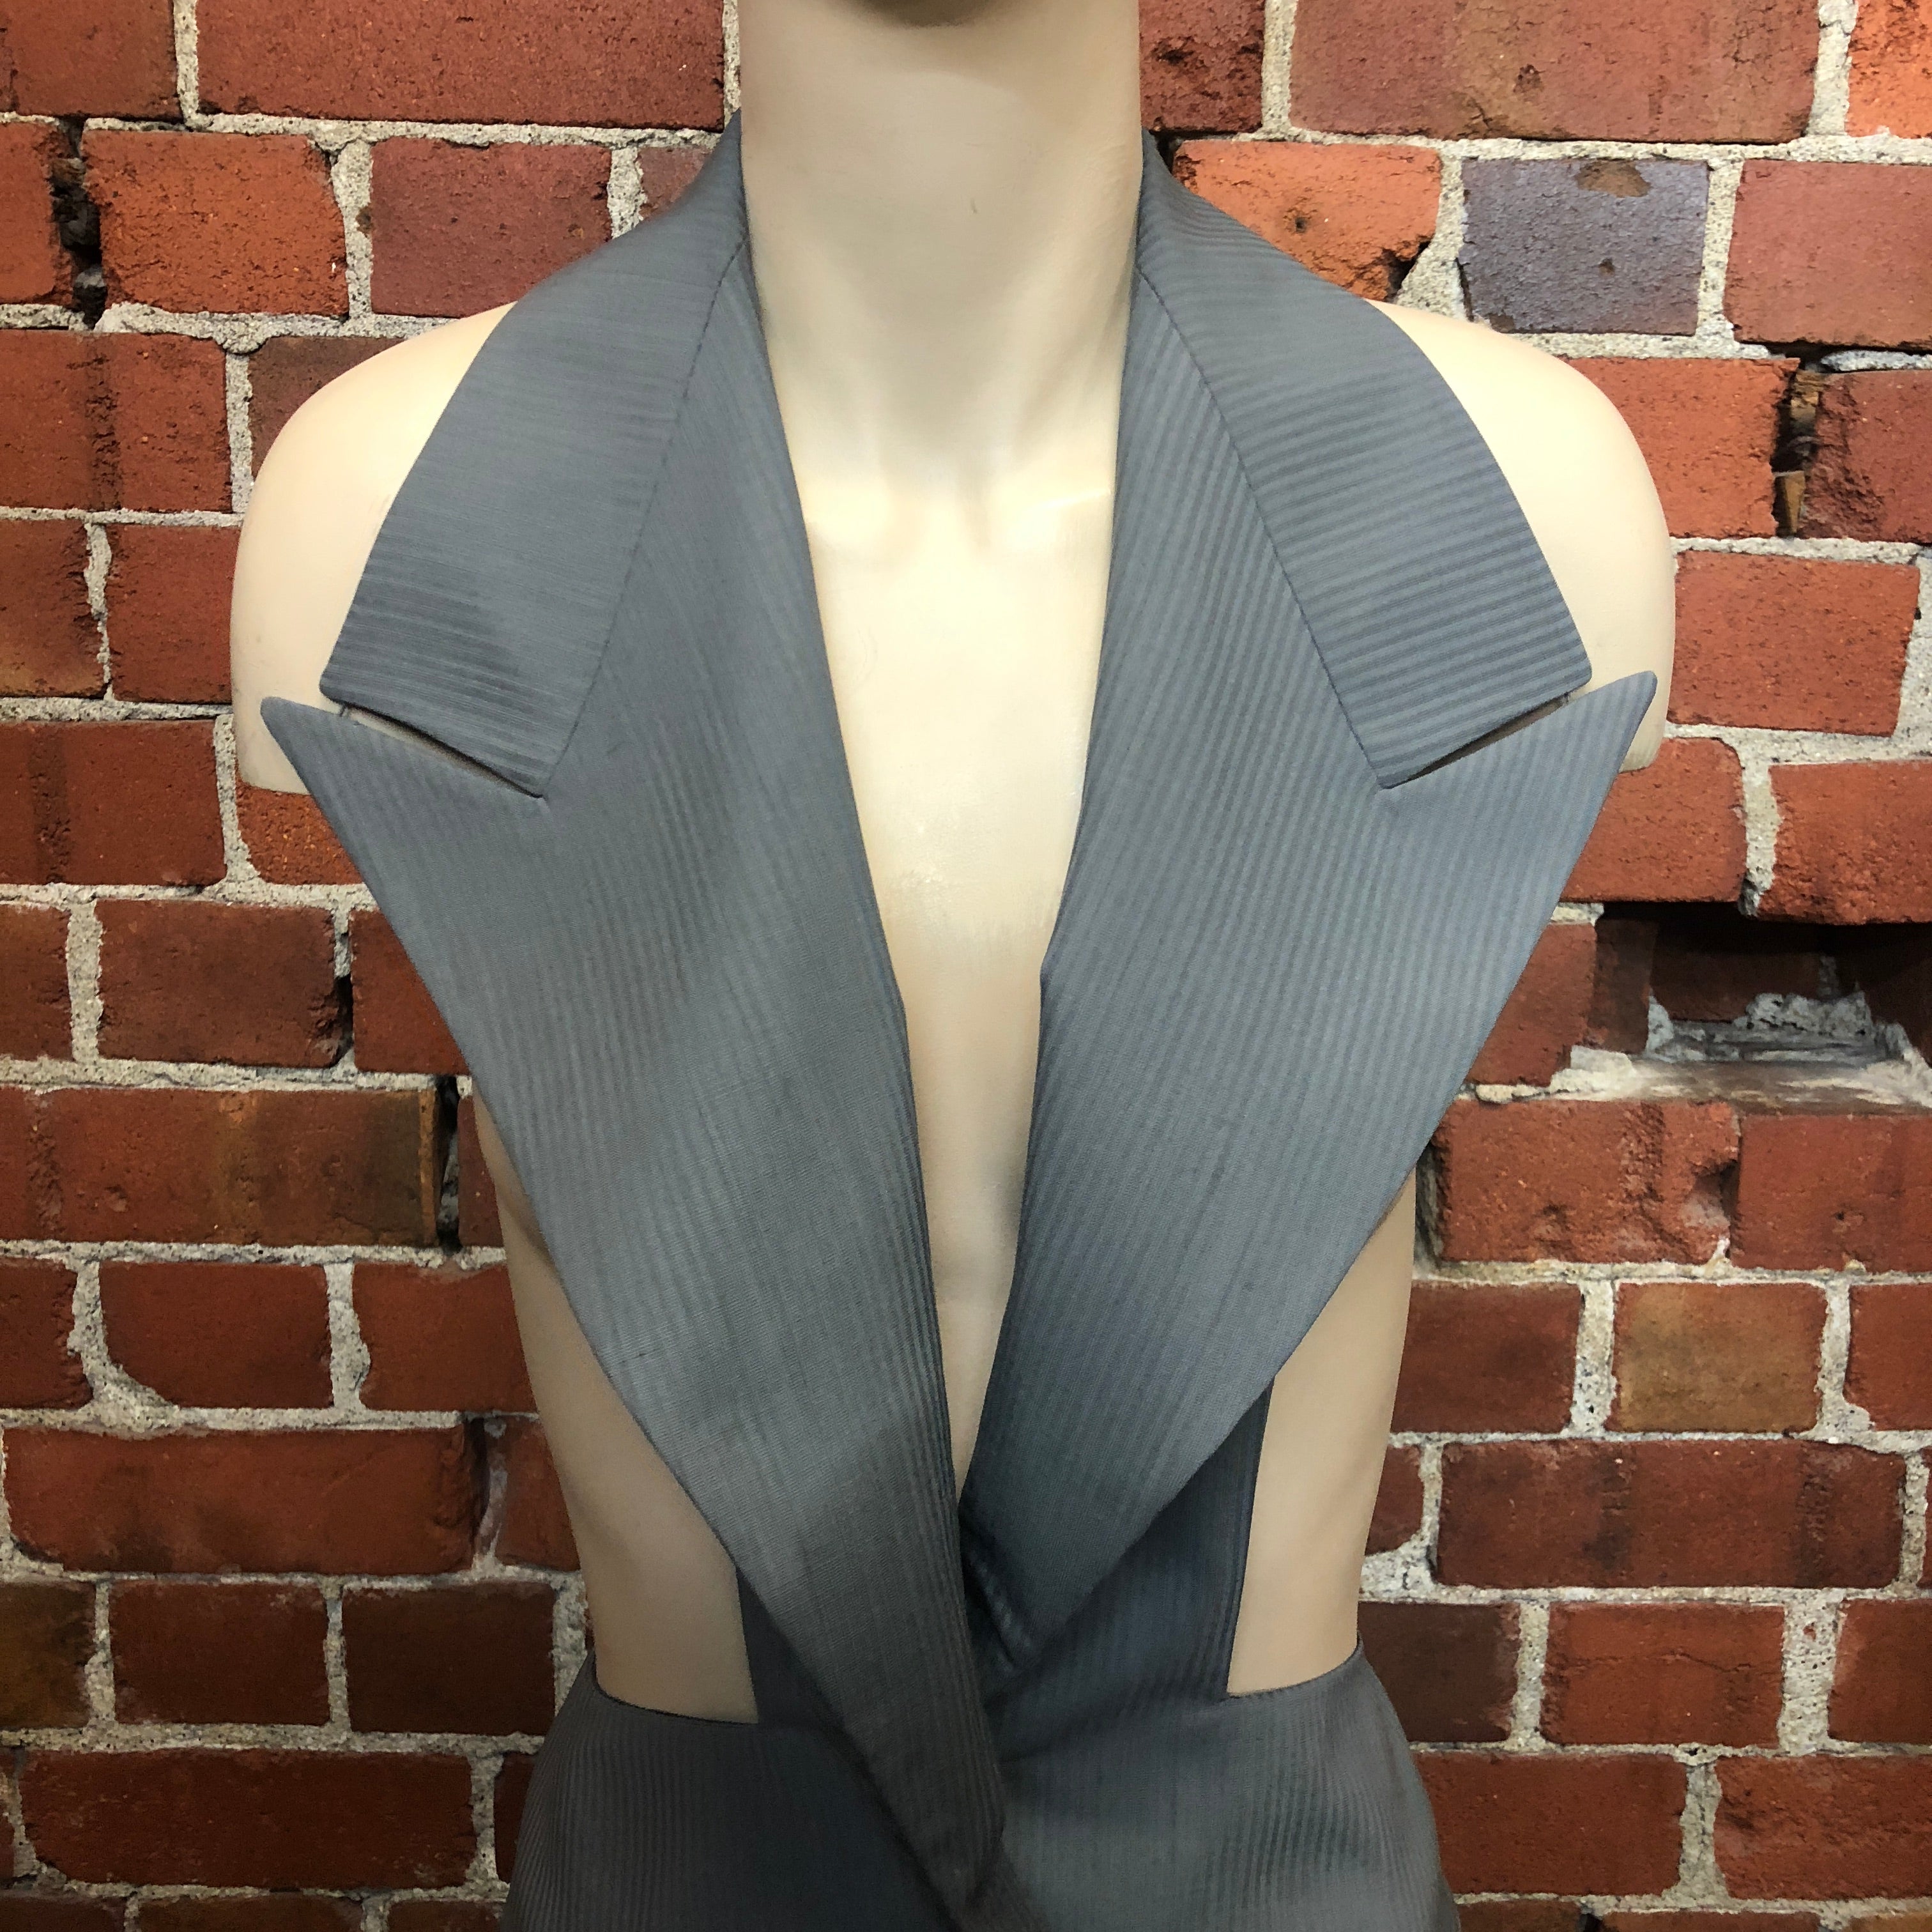 MARGIELA white label artisanal cut-out blazer